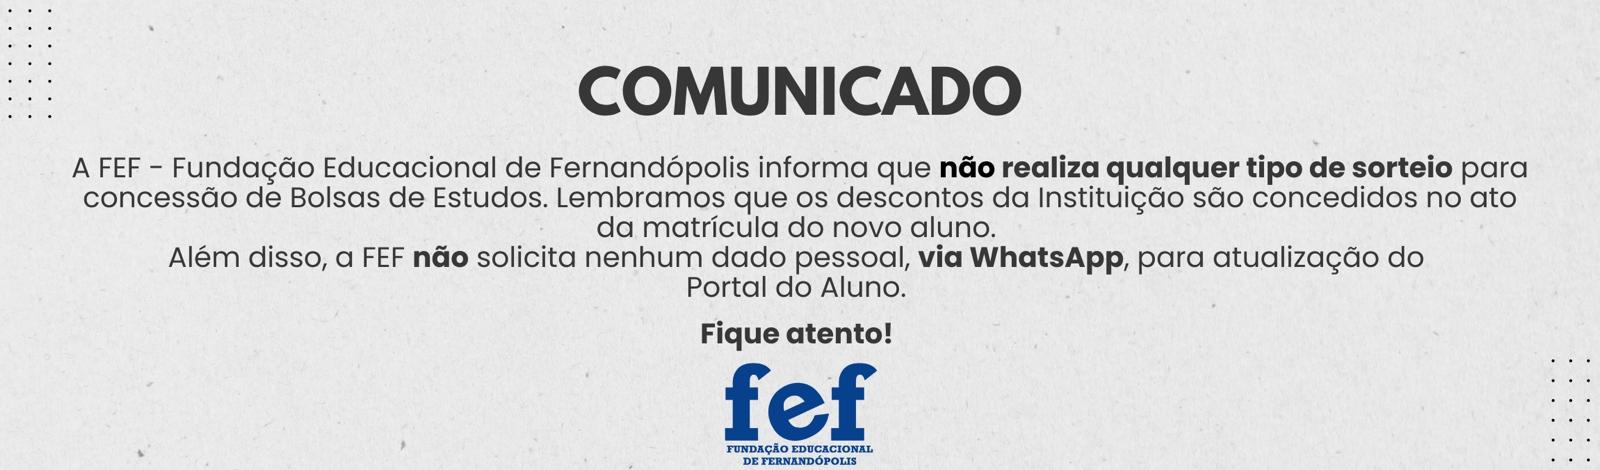 Banner Faculdades Integradas de Fernandópolis - COMUNICADO